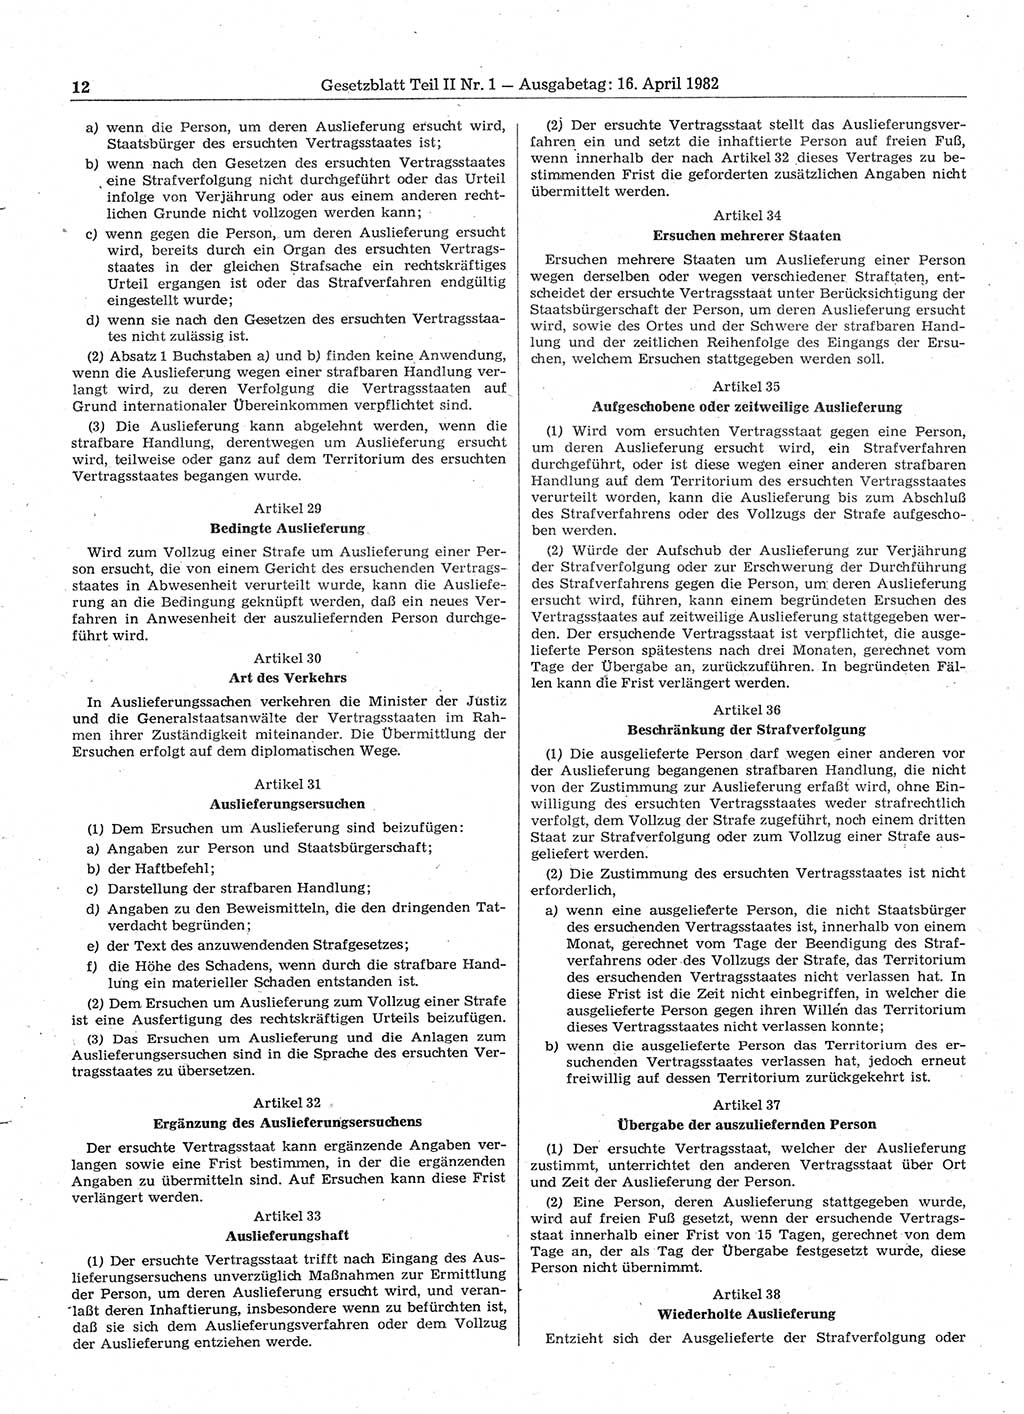 Gesetzblatt (GBl.) der Deutschen Demokratischen Republik (DDR) Teil ⅠⅠ 1982, Seite 12 (GBl. DDR ⅠⅠ 1982, S. 12)